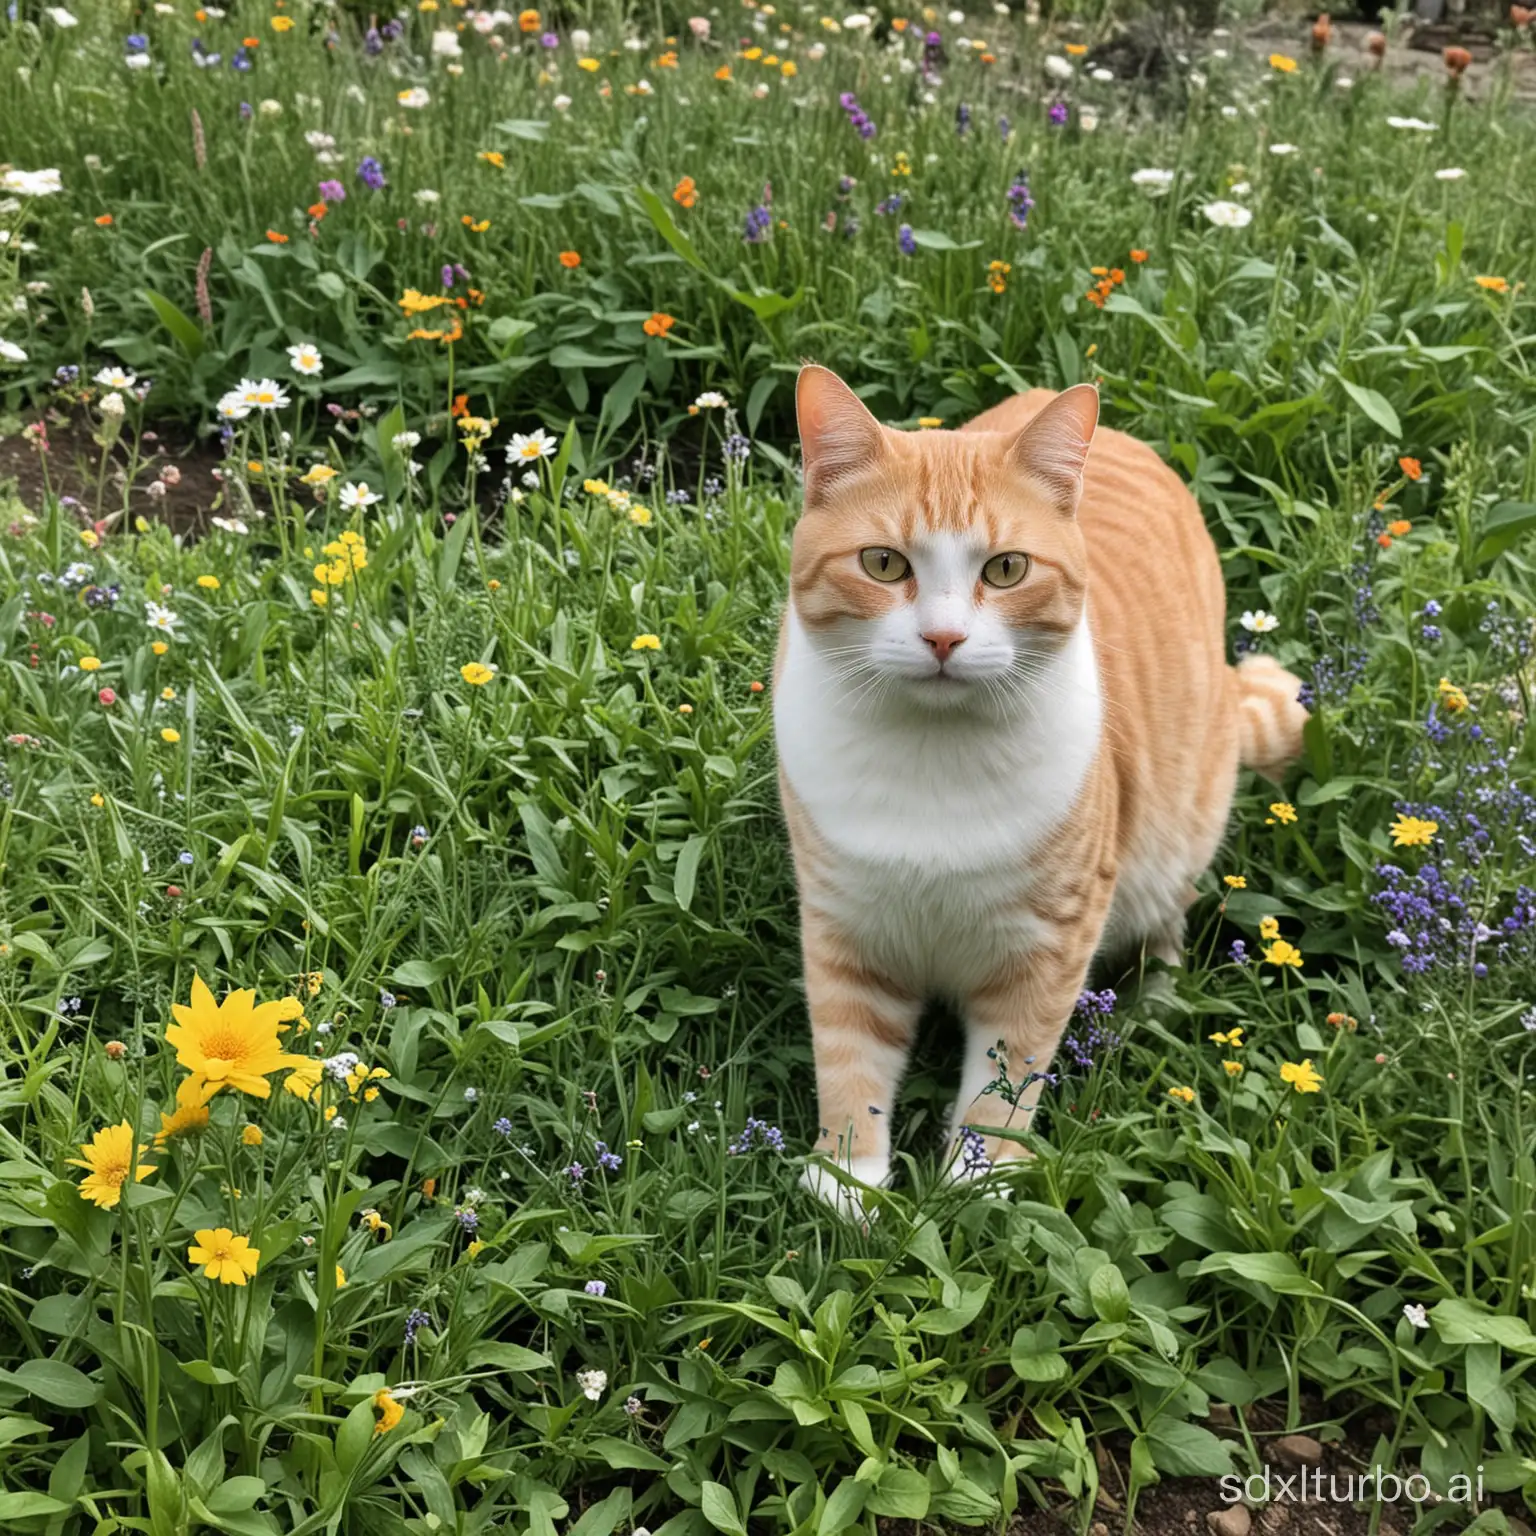 Cheerful-Cat-Enjoying-Sunny-Garden-Bliss